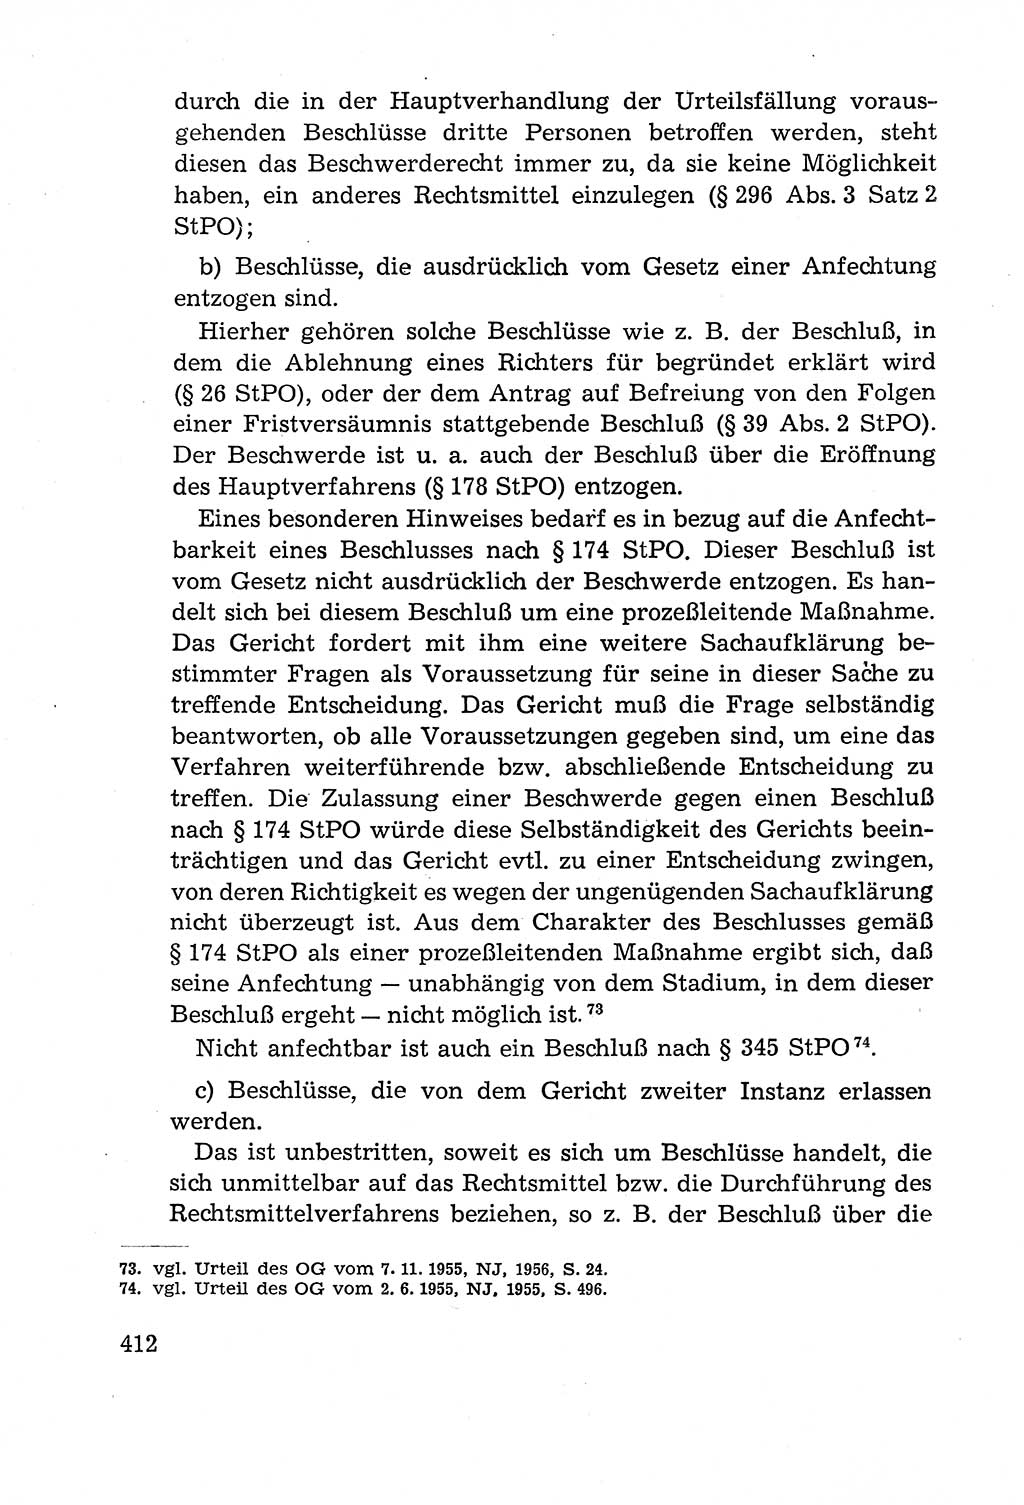 Leitfaden des Strafprozeßrechts der Deutschen Demokratischen Republik (DDR) 1959, Seite 412 (LF StPR DDR 1959, S. 412)